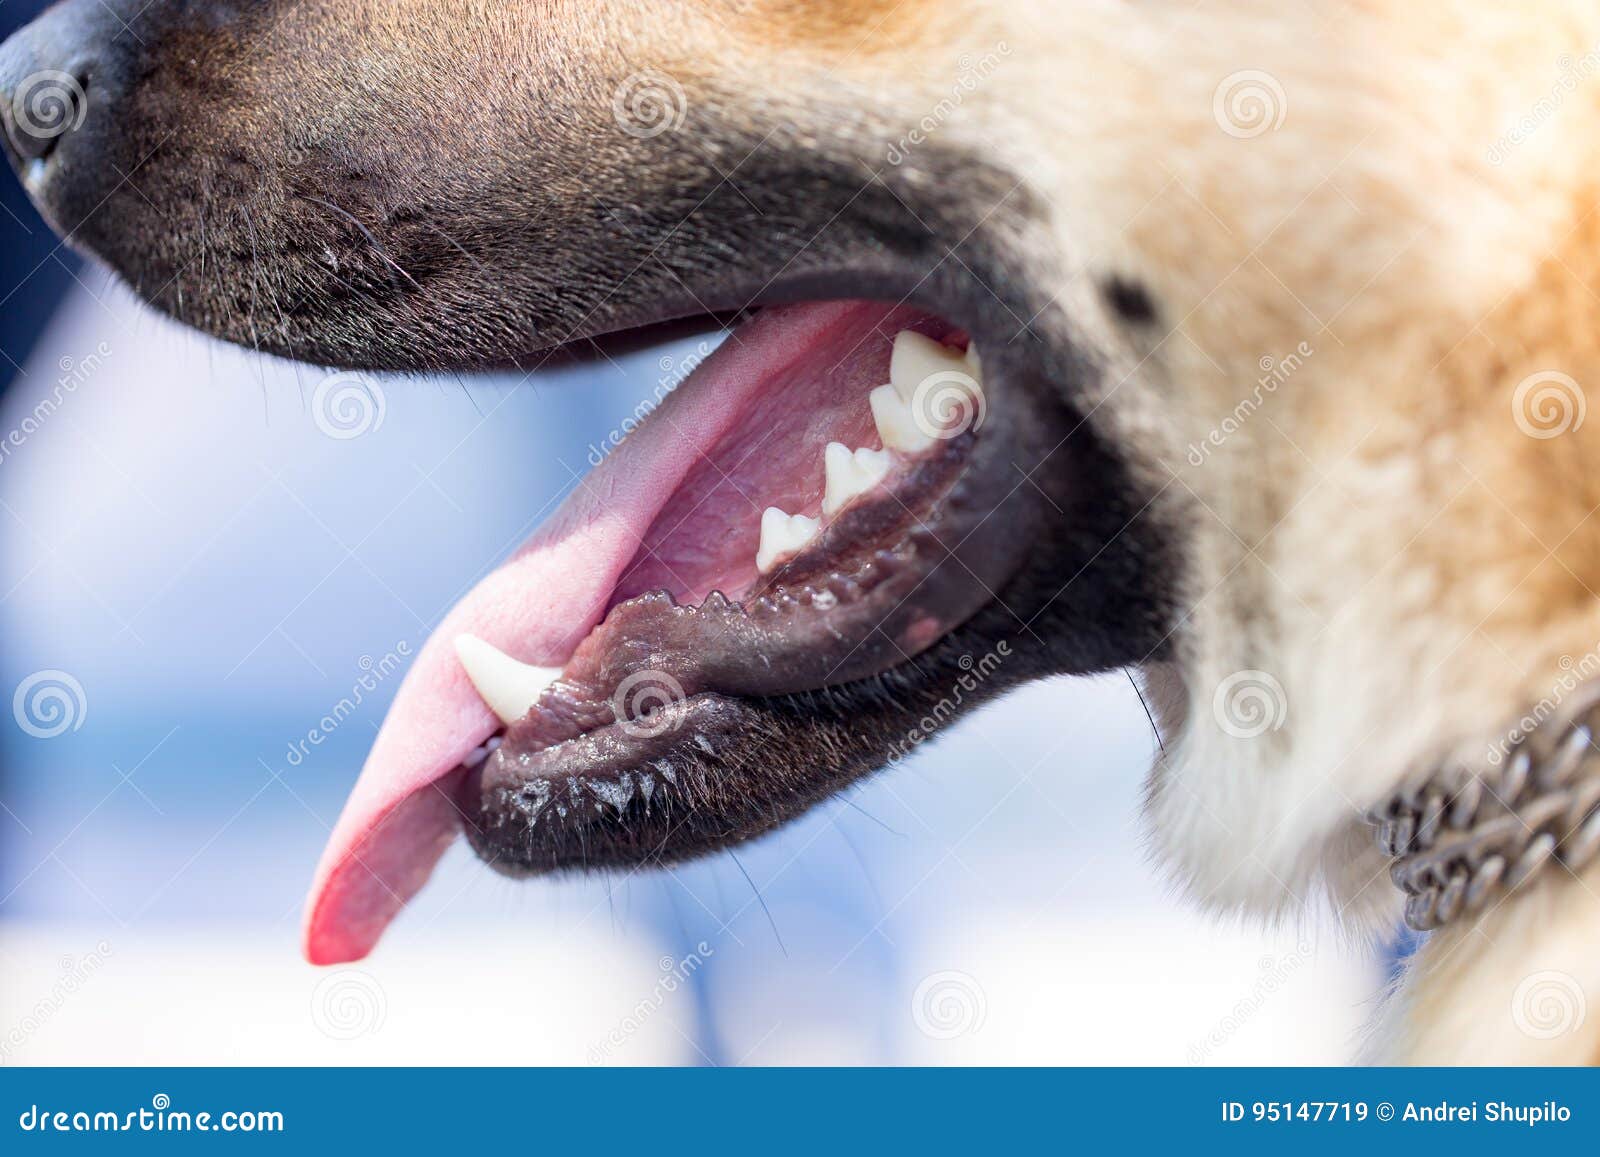 Как открыть рот собаке. Собака с открытыми зубами и языком.